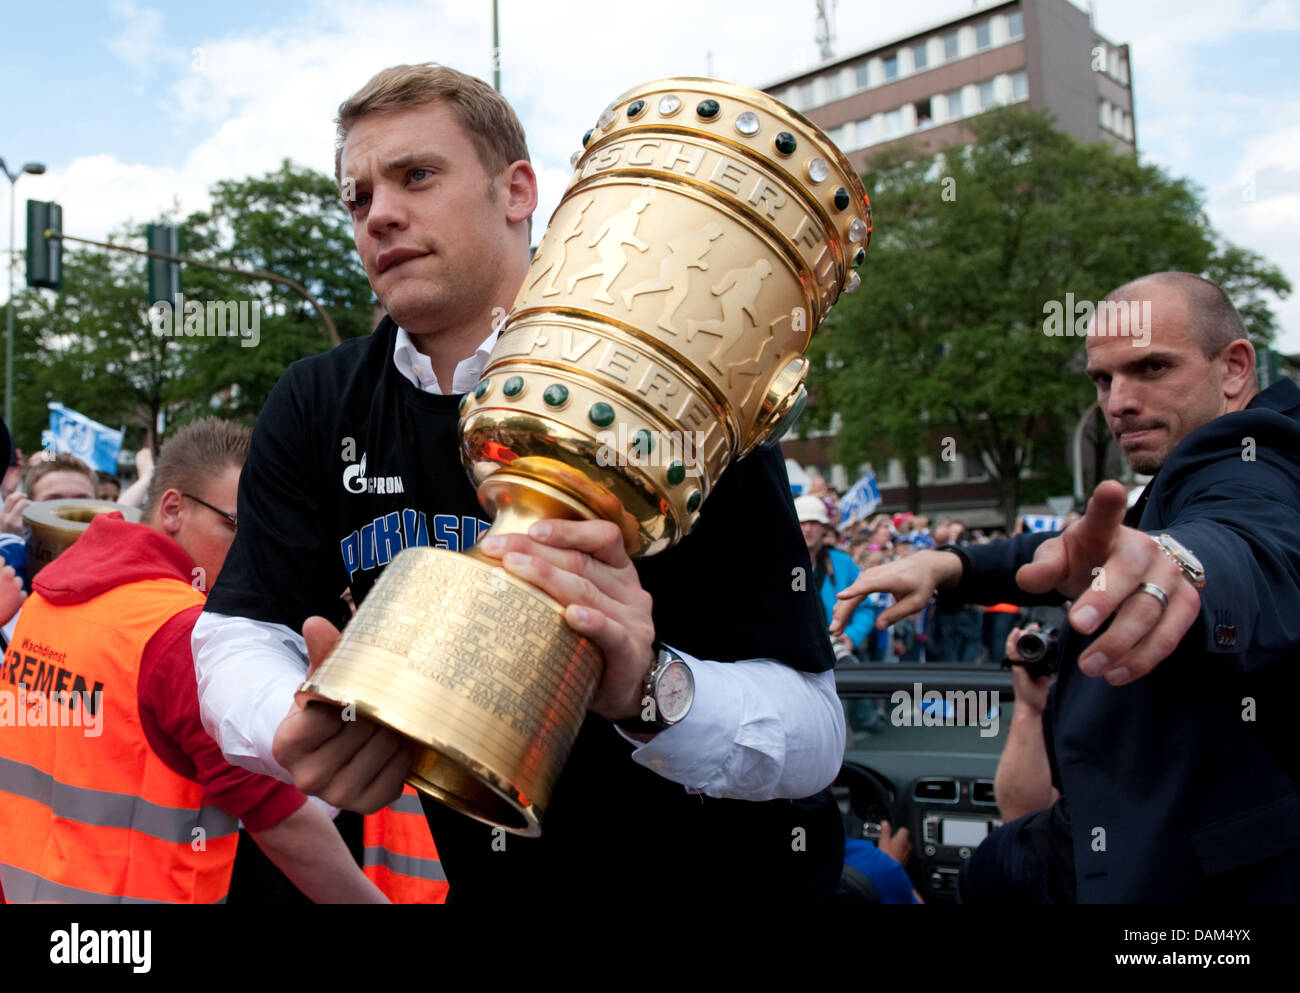 Schalke portieri Manuel Neuer (L) e Matthias Schober (R) presente la DFB cup e salutare i tifosi a un per il giro della Papamobile a Gelsenkirchen (Germania), 22 maggio 2011. Il 21 maggio, Schalke ha vinto 5:0 in la DFB cup match finale contro MSV Duisburg. Foto: Bernd Thissen Foto Stock